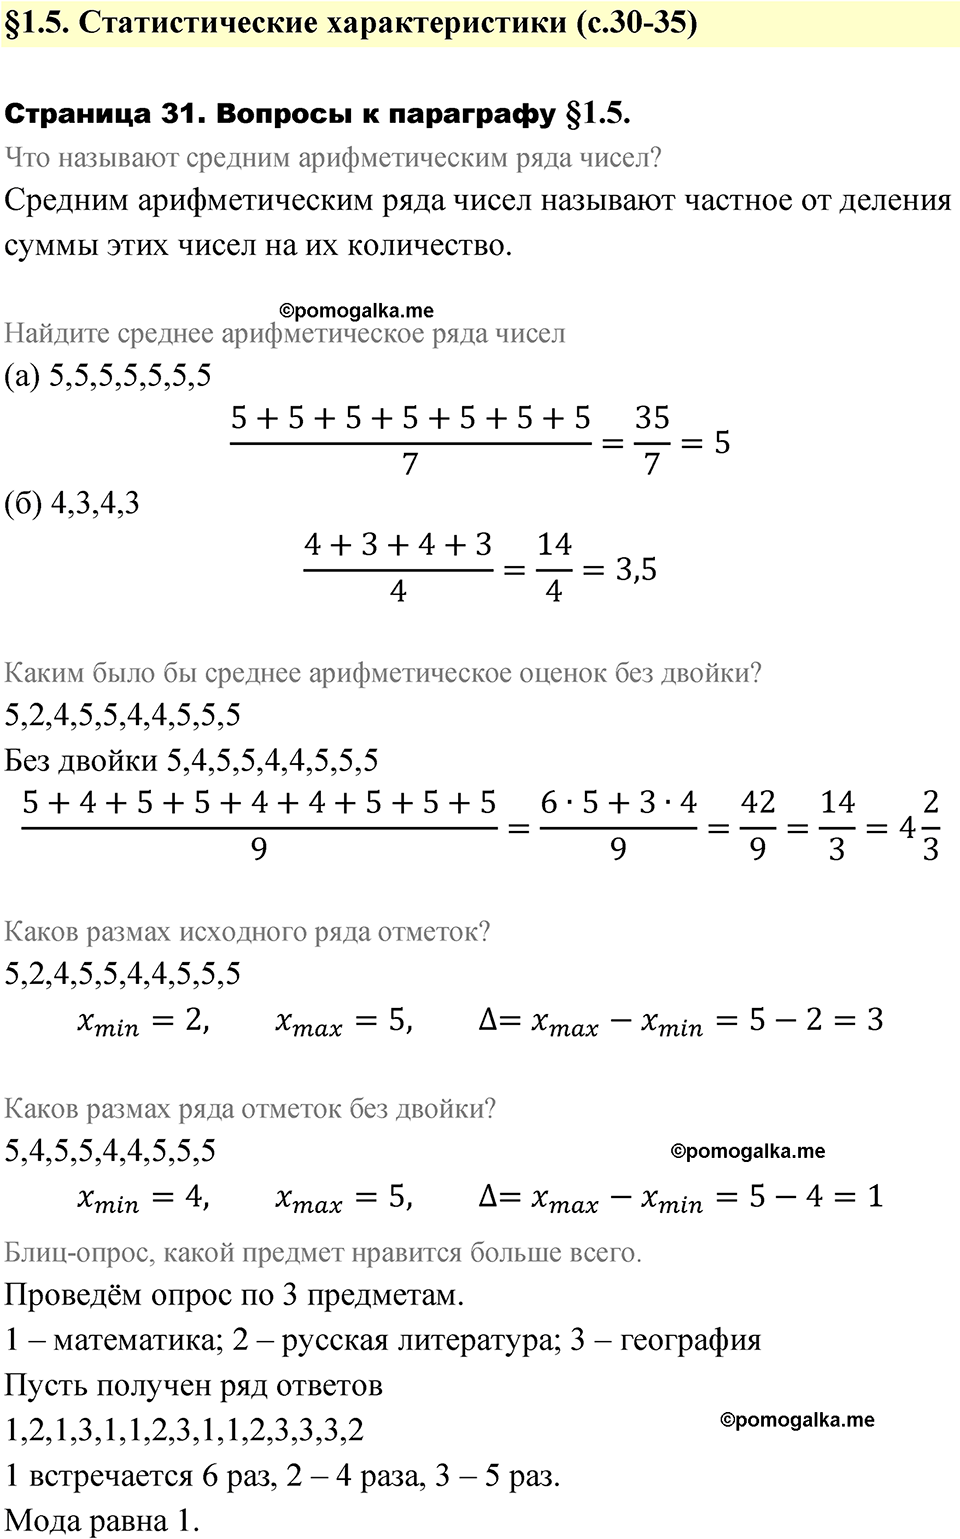 страница 31 вопросы после §1.5 алгебра 7 класс Дорофеев 2022 год